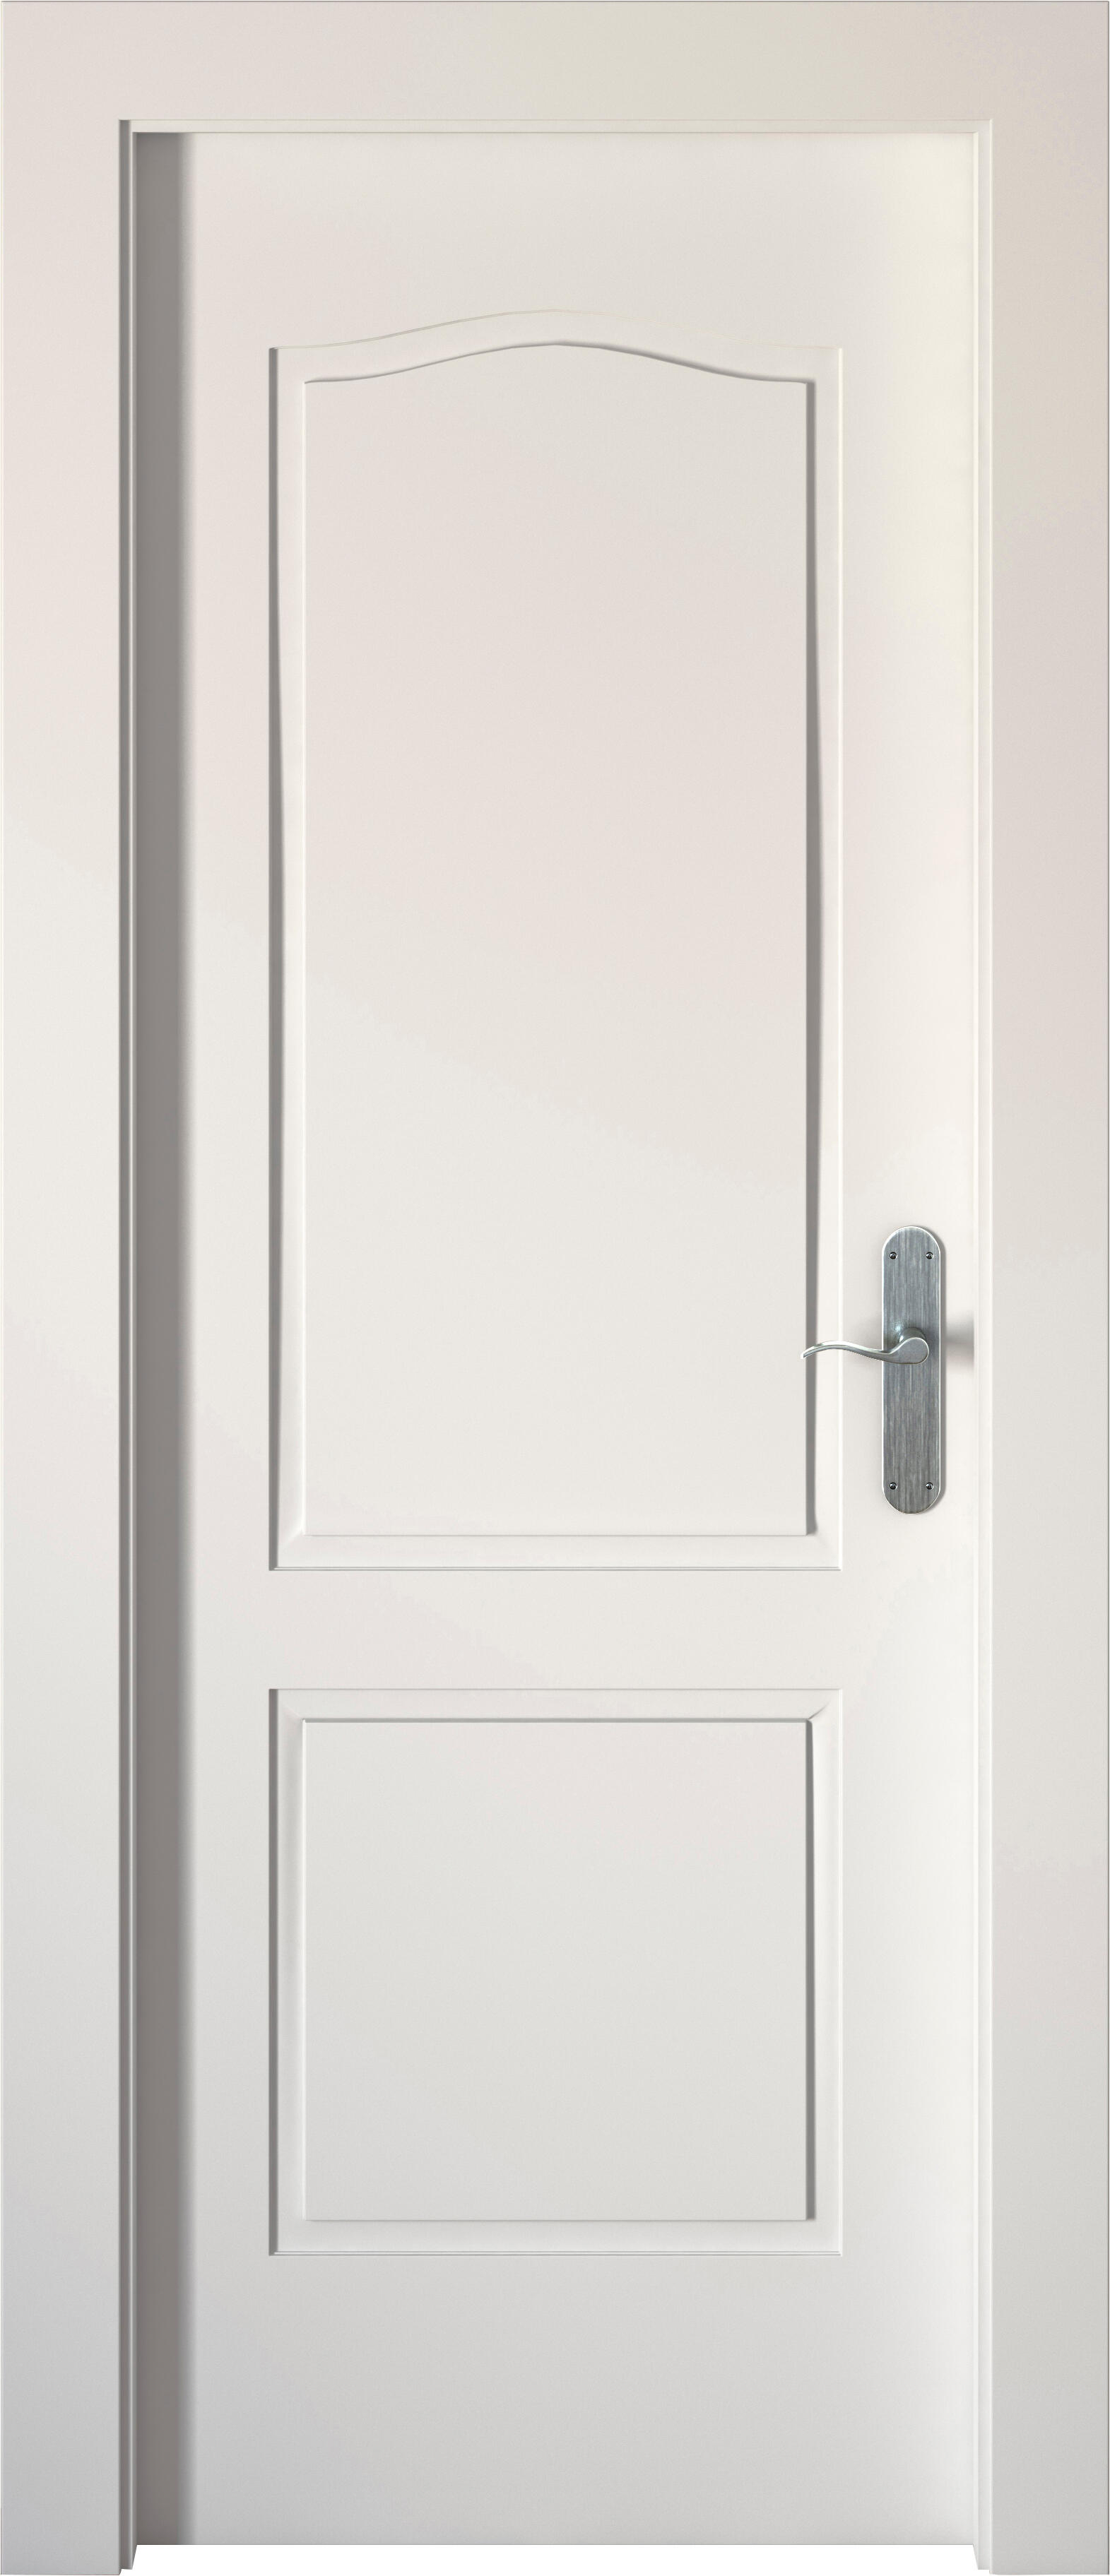 Puerta abatible praga blanca aero blanco izquierda de 110x30 y 82.5cm